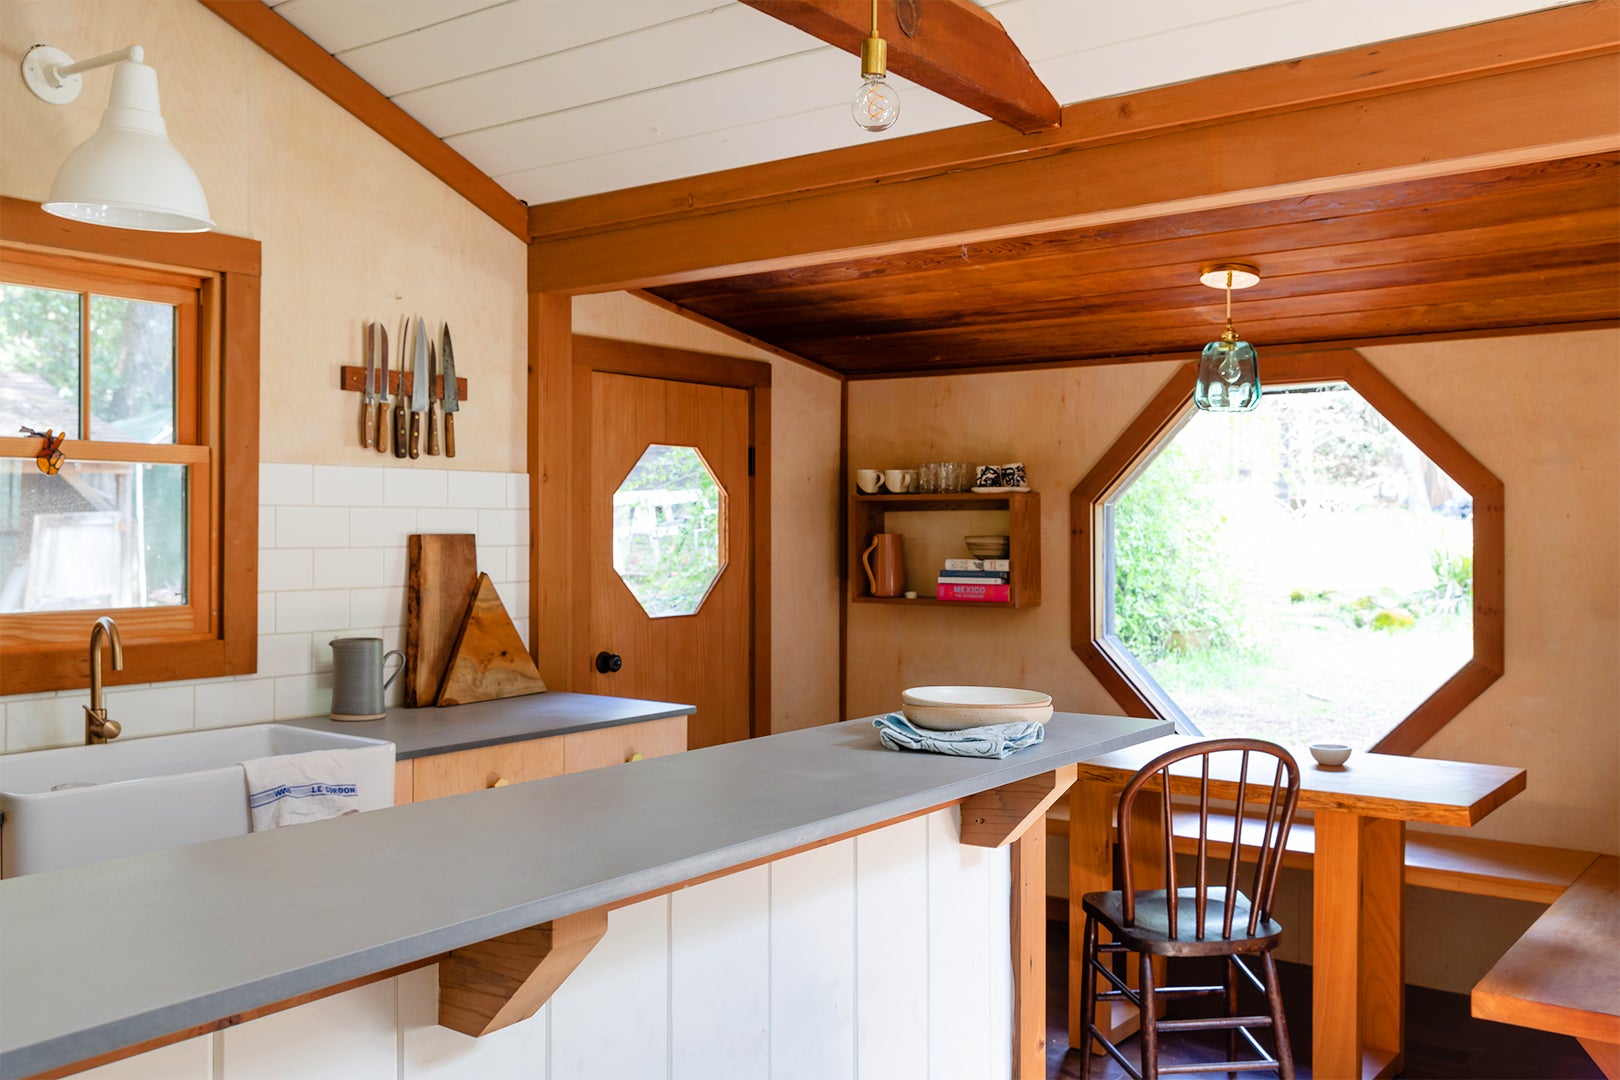 kitchen facing breakfast nook with octagonal window